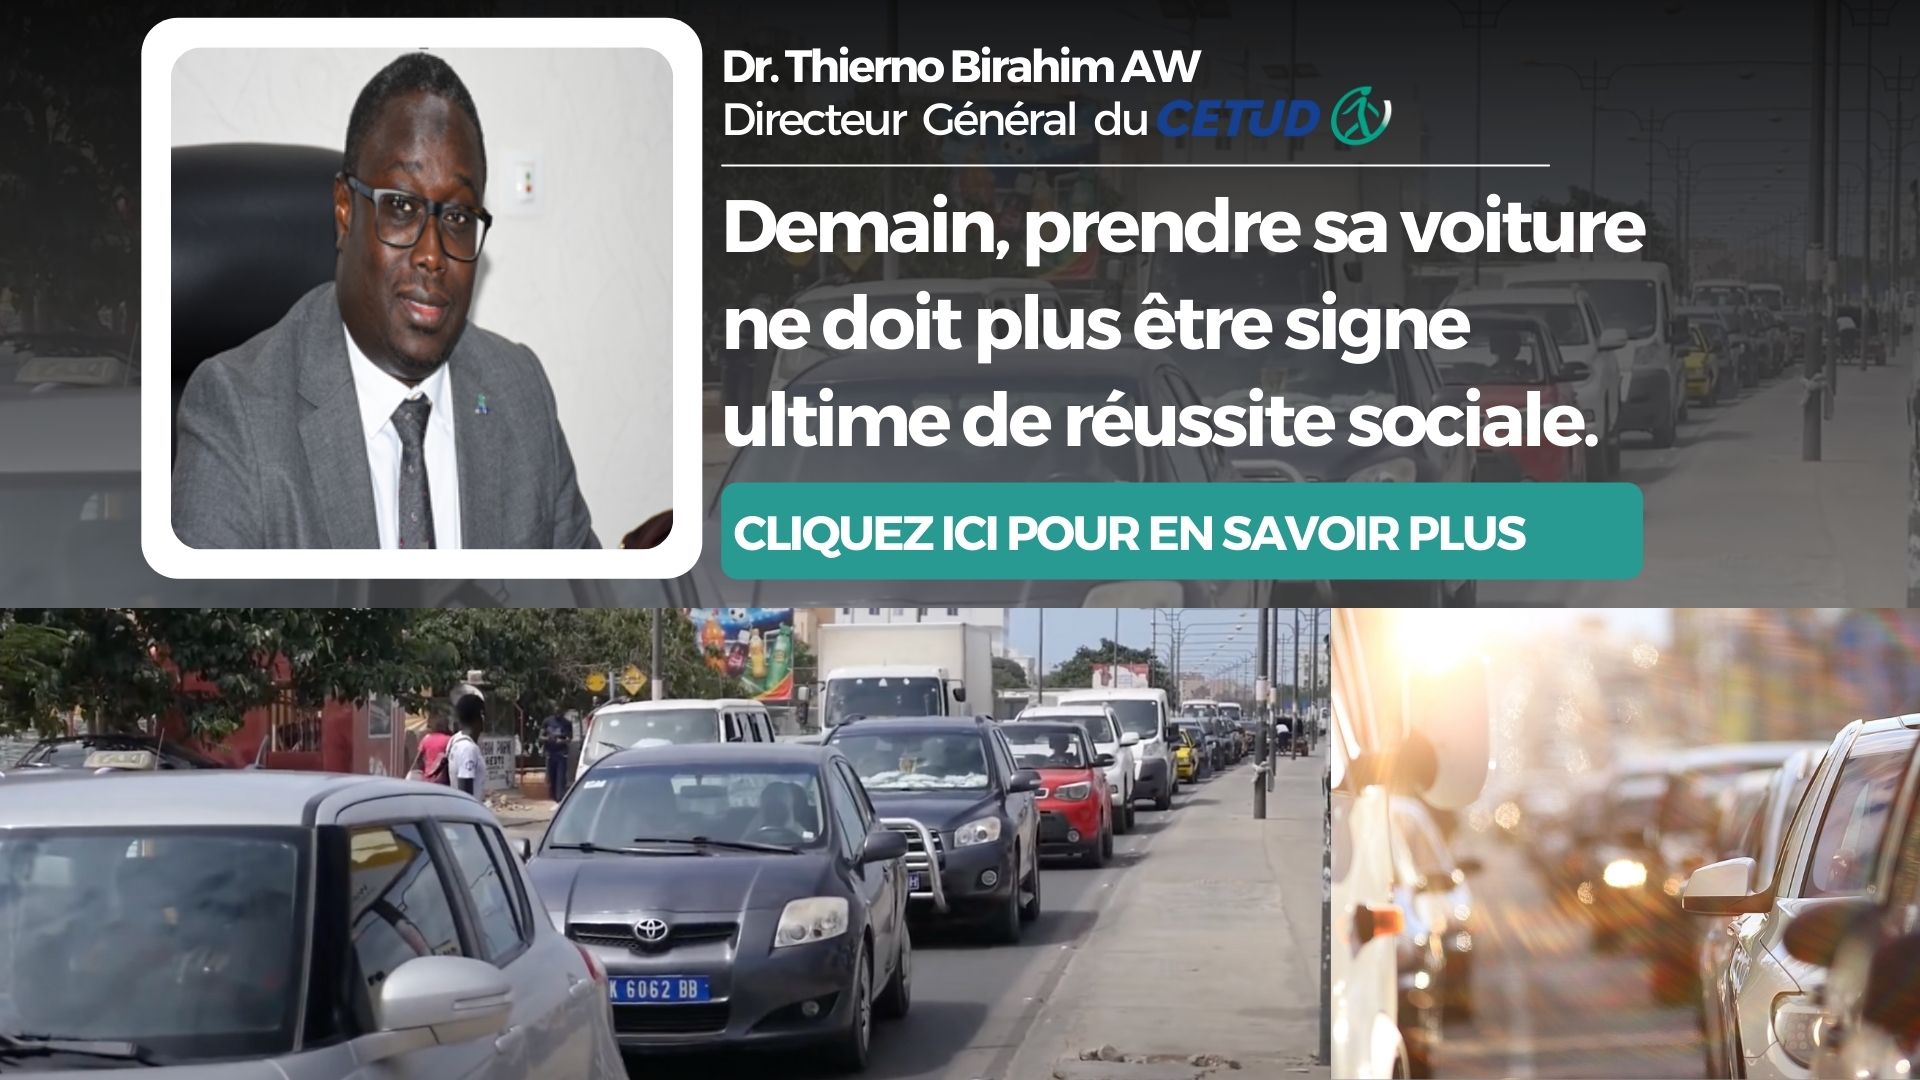 Dr. Thierno Birahim AW : Demain, prendre sa voiture ne doit plus être signe ultime de réussite sociale.